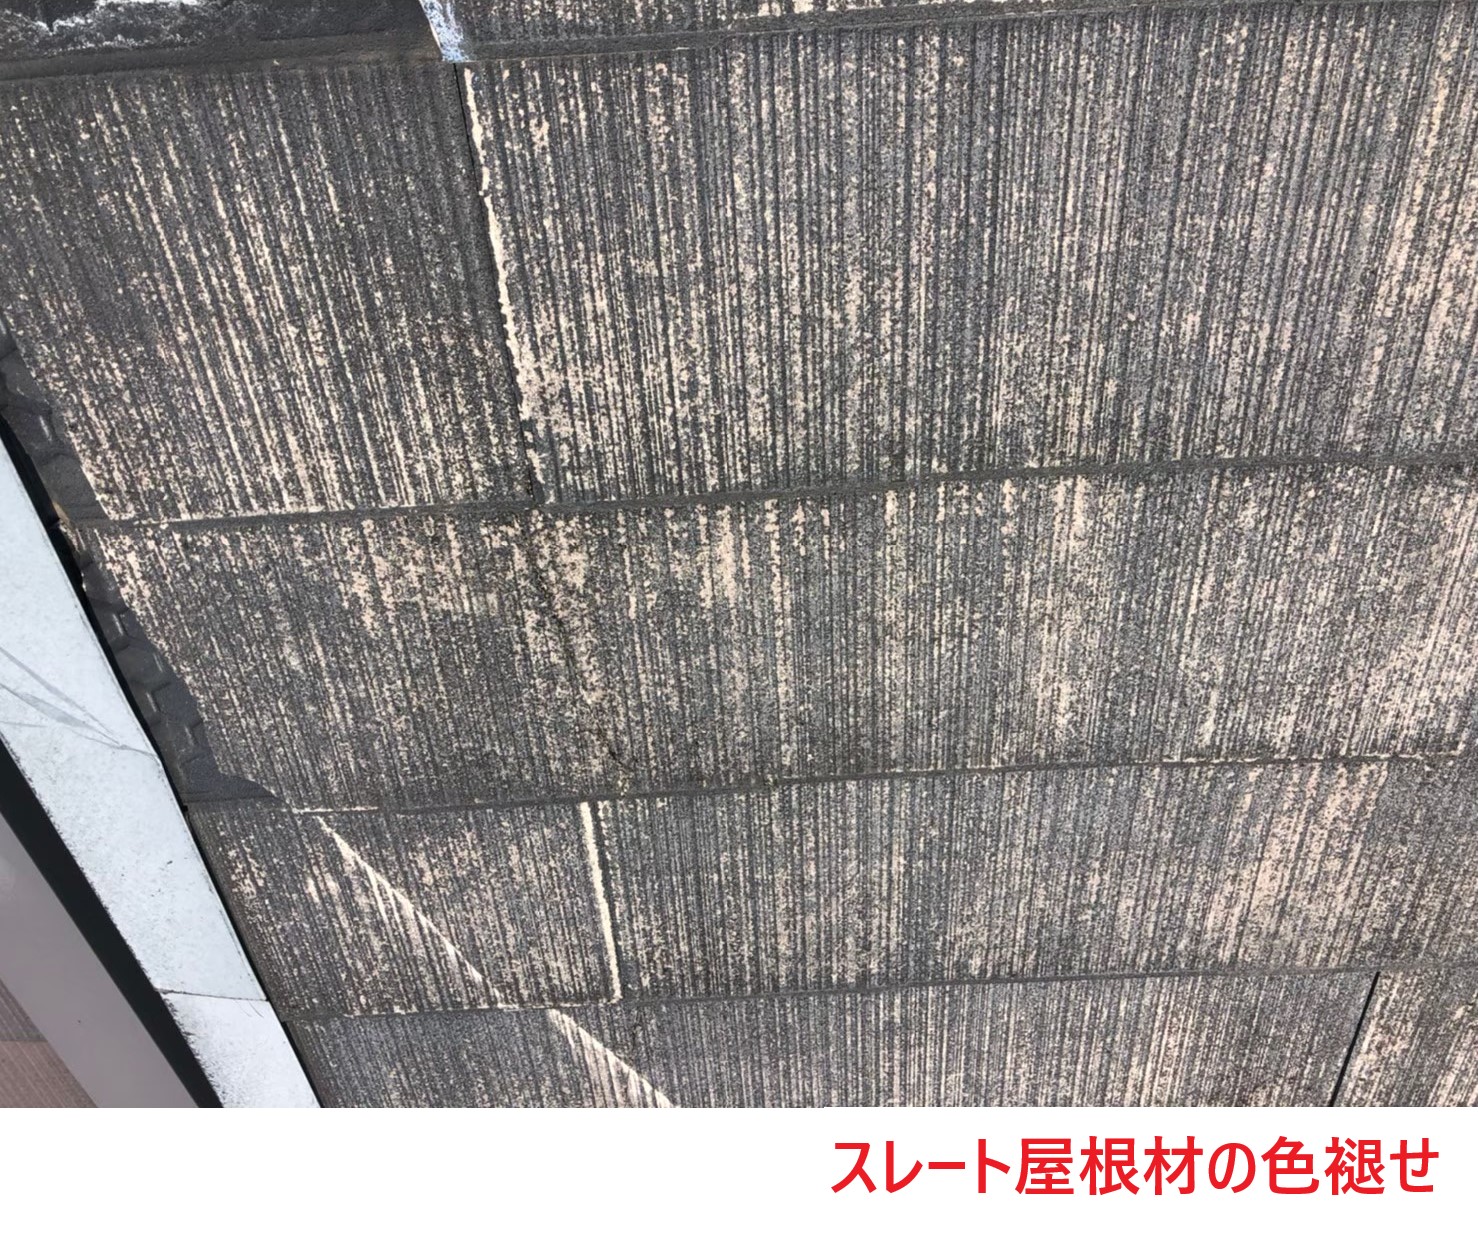 スレート屋根材の色褪せ (1)